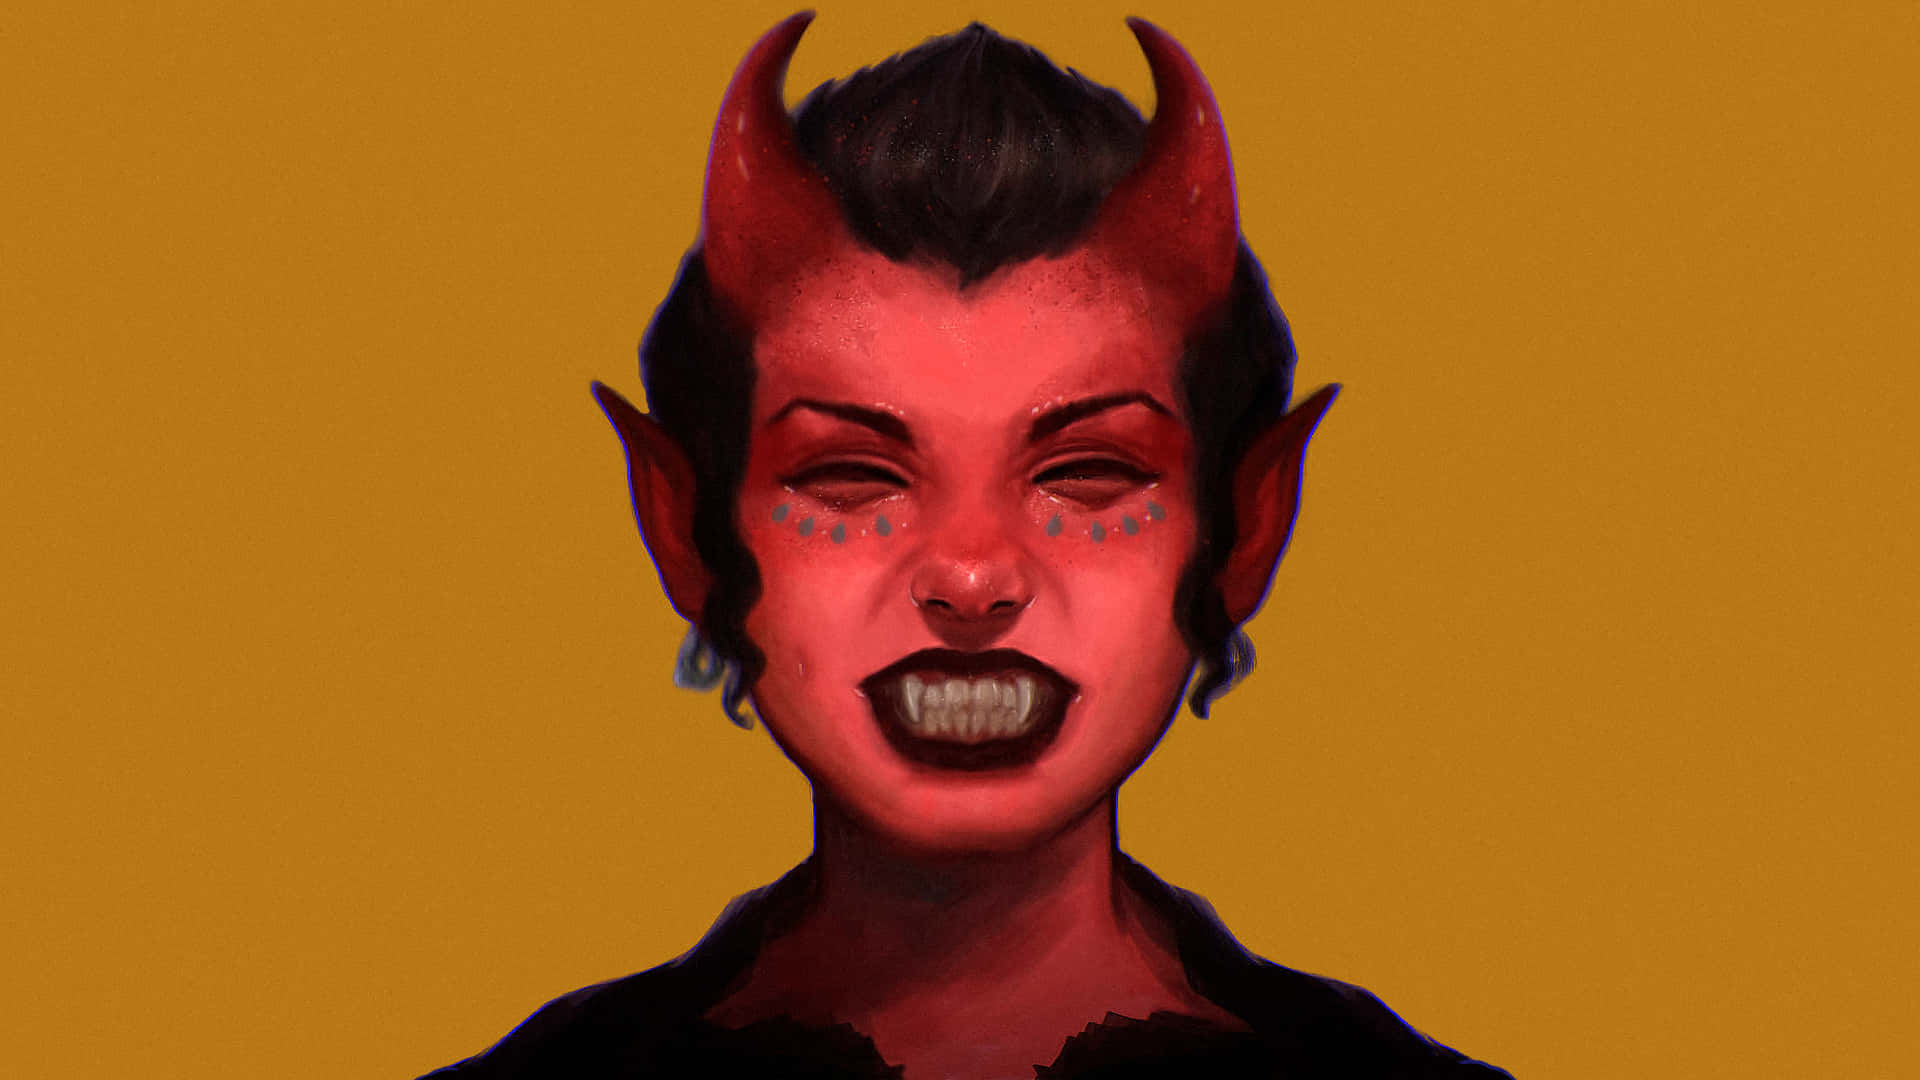 devil woman painting